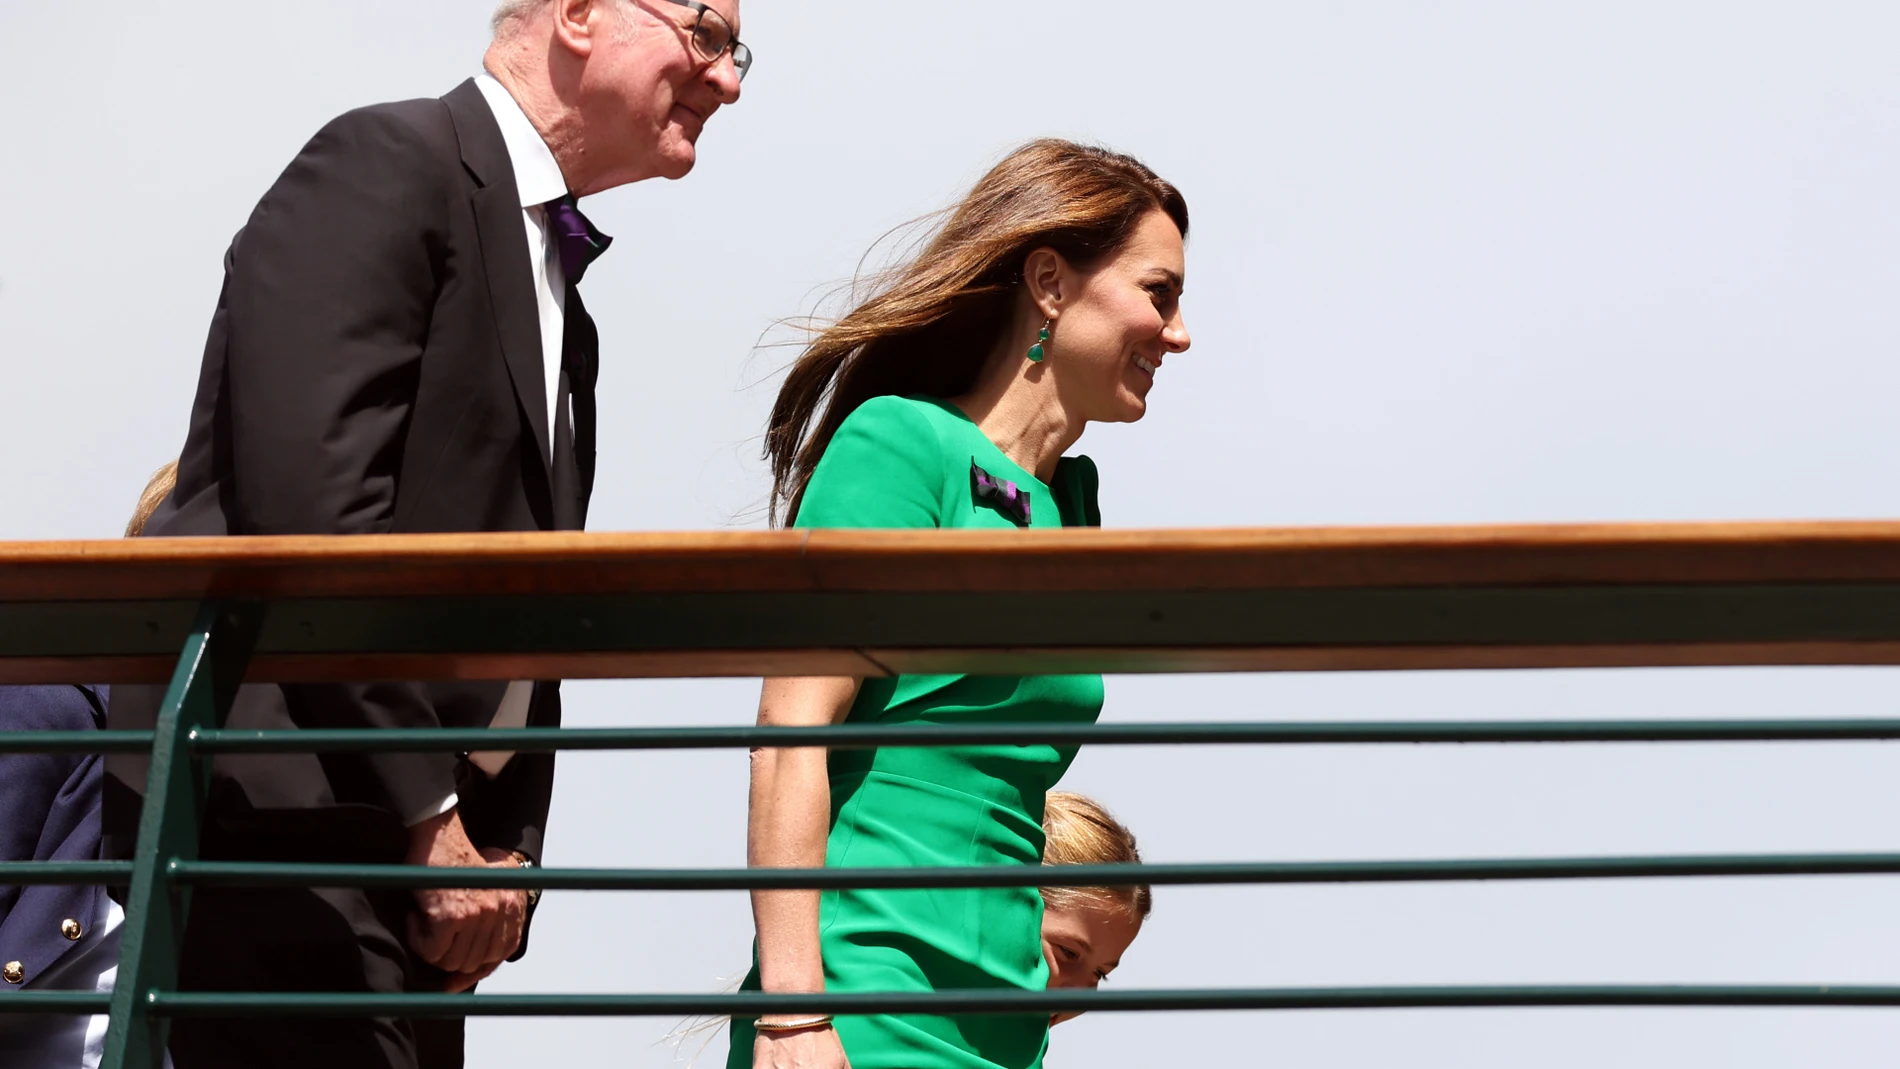 El elegante y discreto vestido verde esperanza de Kate Middleton para la final de Wimbledon